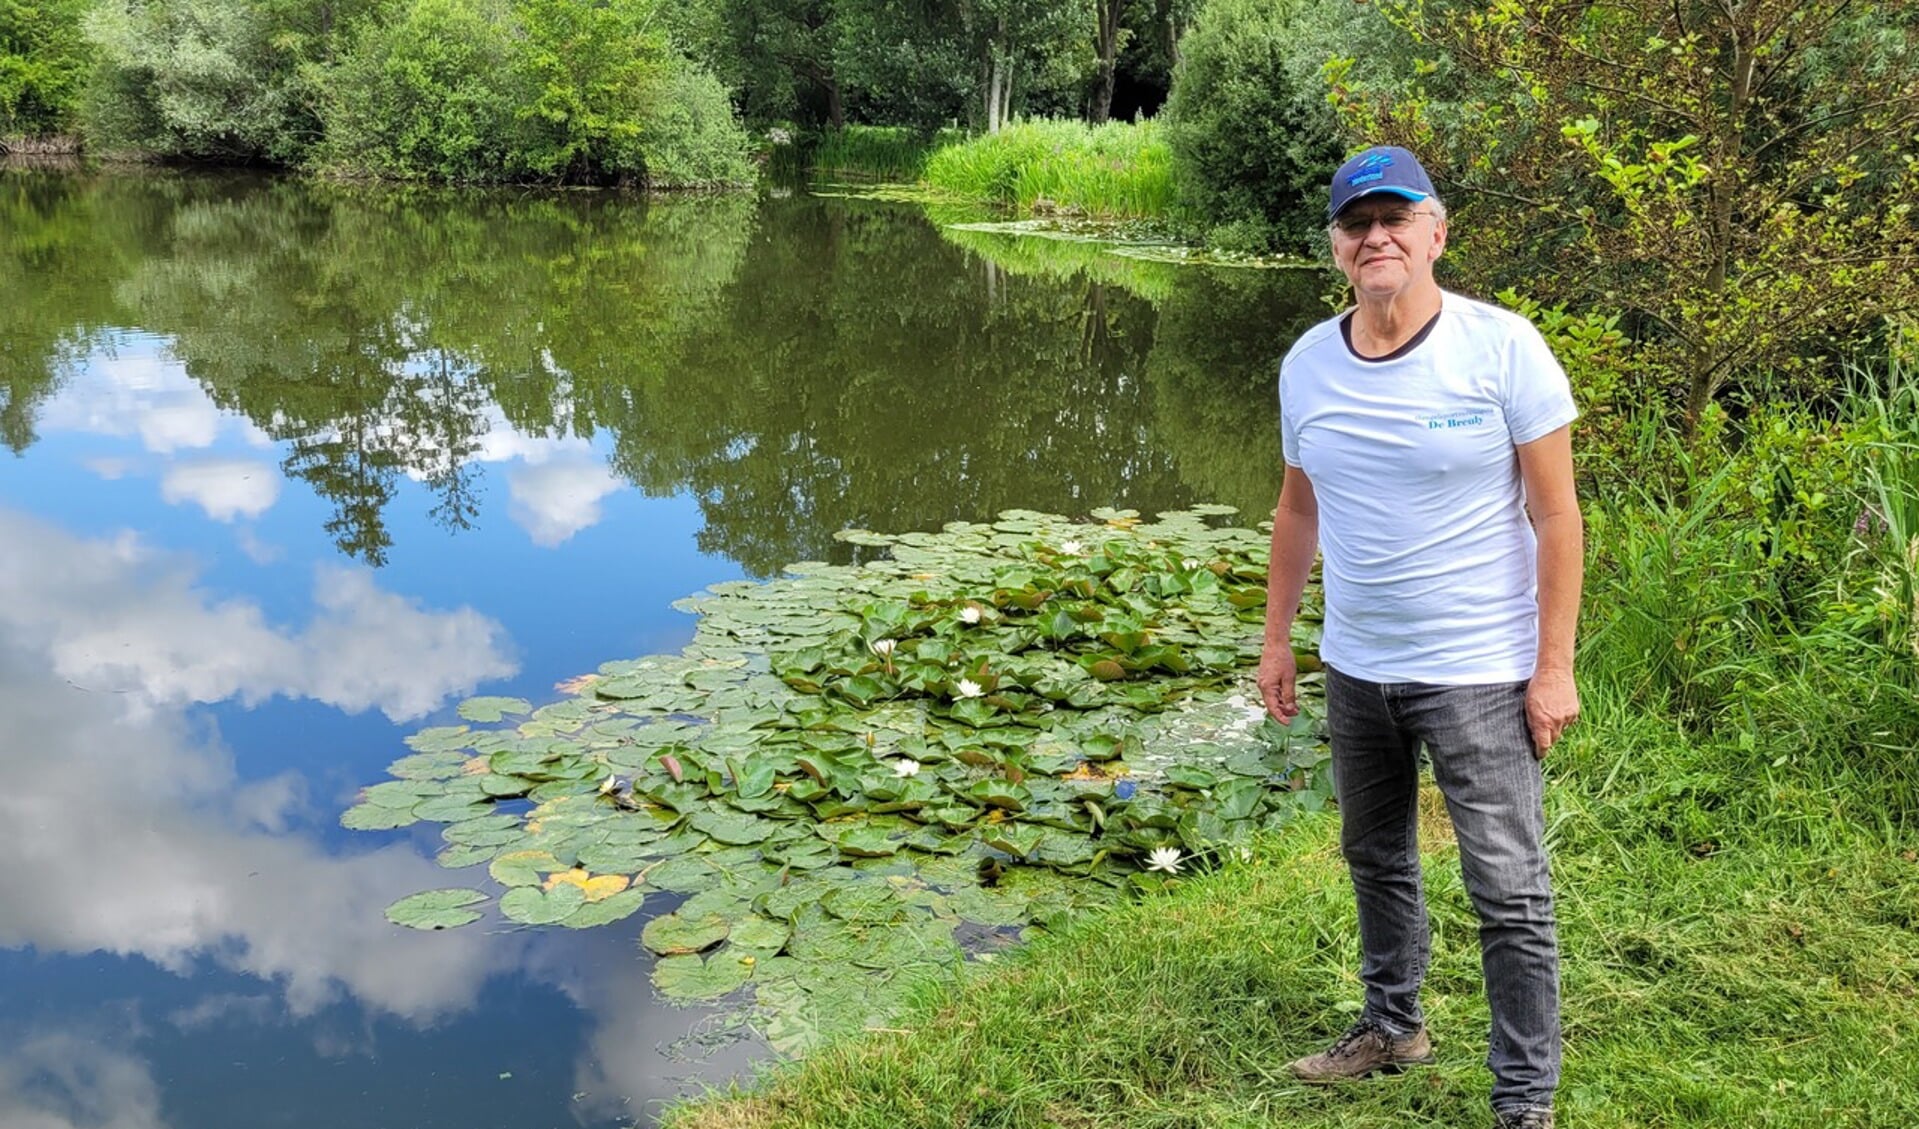 Toon Janssen: "Via Samen Vissen maken we voor bewoners van zorgcentra van de Liemerije vier keer per jaar een visuitje mogelijk"